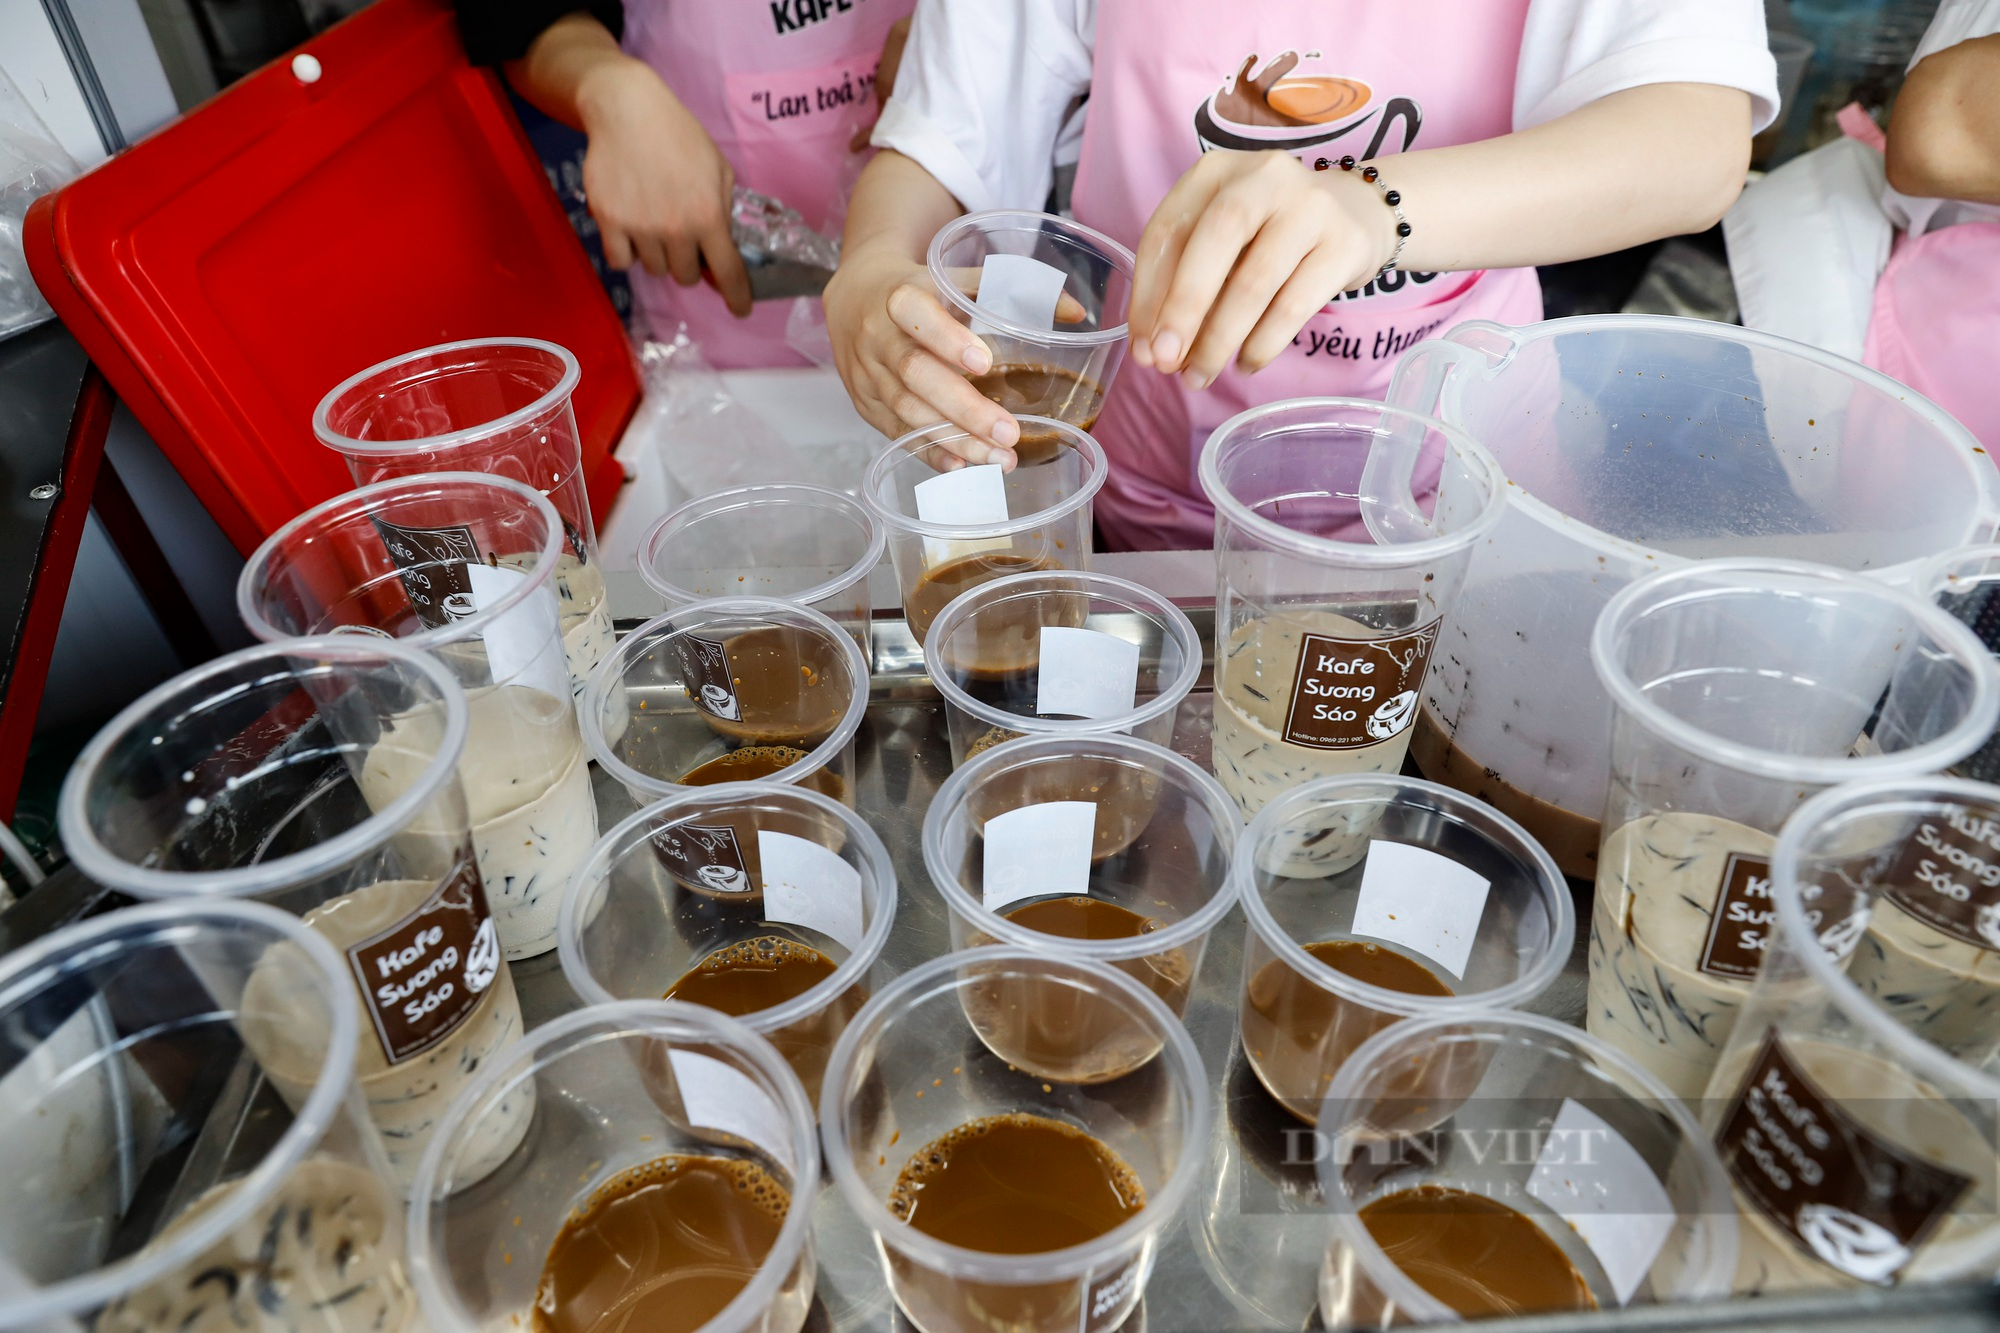 Cà phê muối đặc sản Huế đổ bộ Hà Nội, chủ quán mỏi tay bán hơn 1000 cốc/ngày - Ảnh 7.